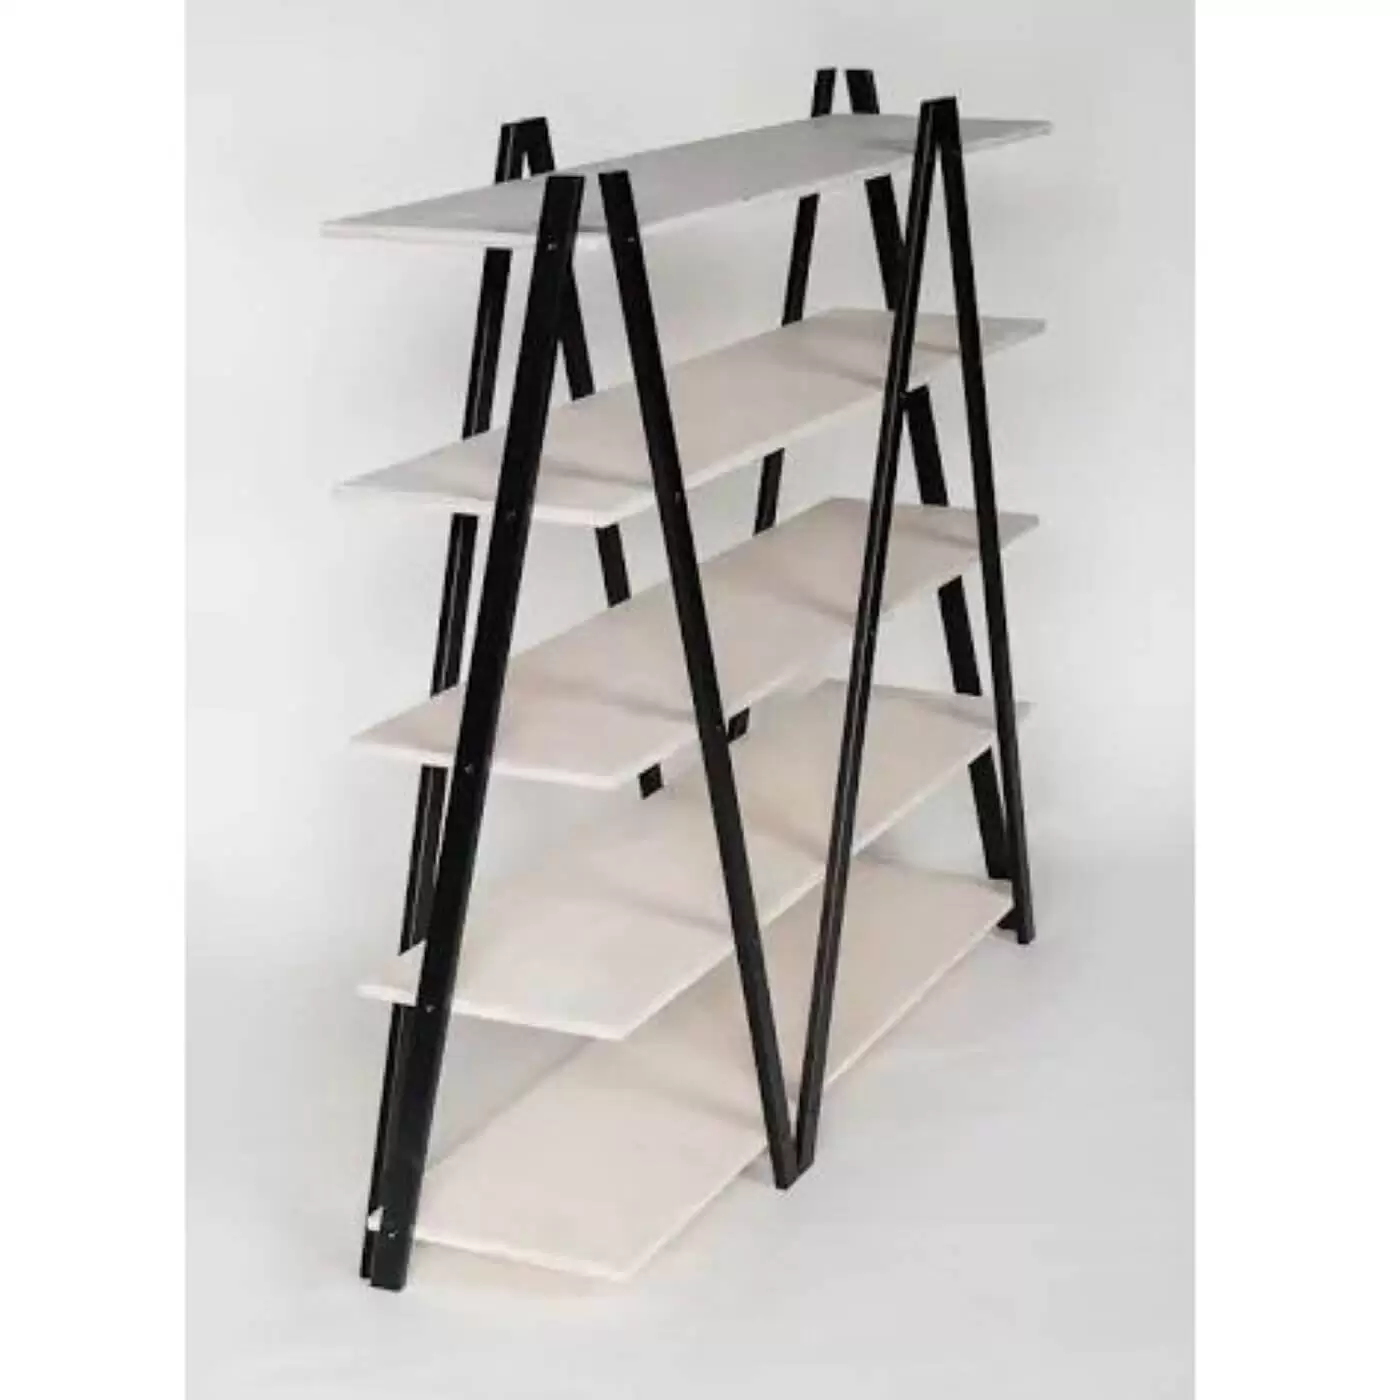 Regał industrialny SIK-SAK półki białe nogi czarne wysoki 136 cm. 5 półek na książki ze skandynawskiej sklejki widok bokiem